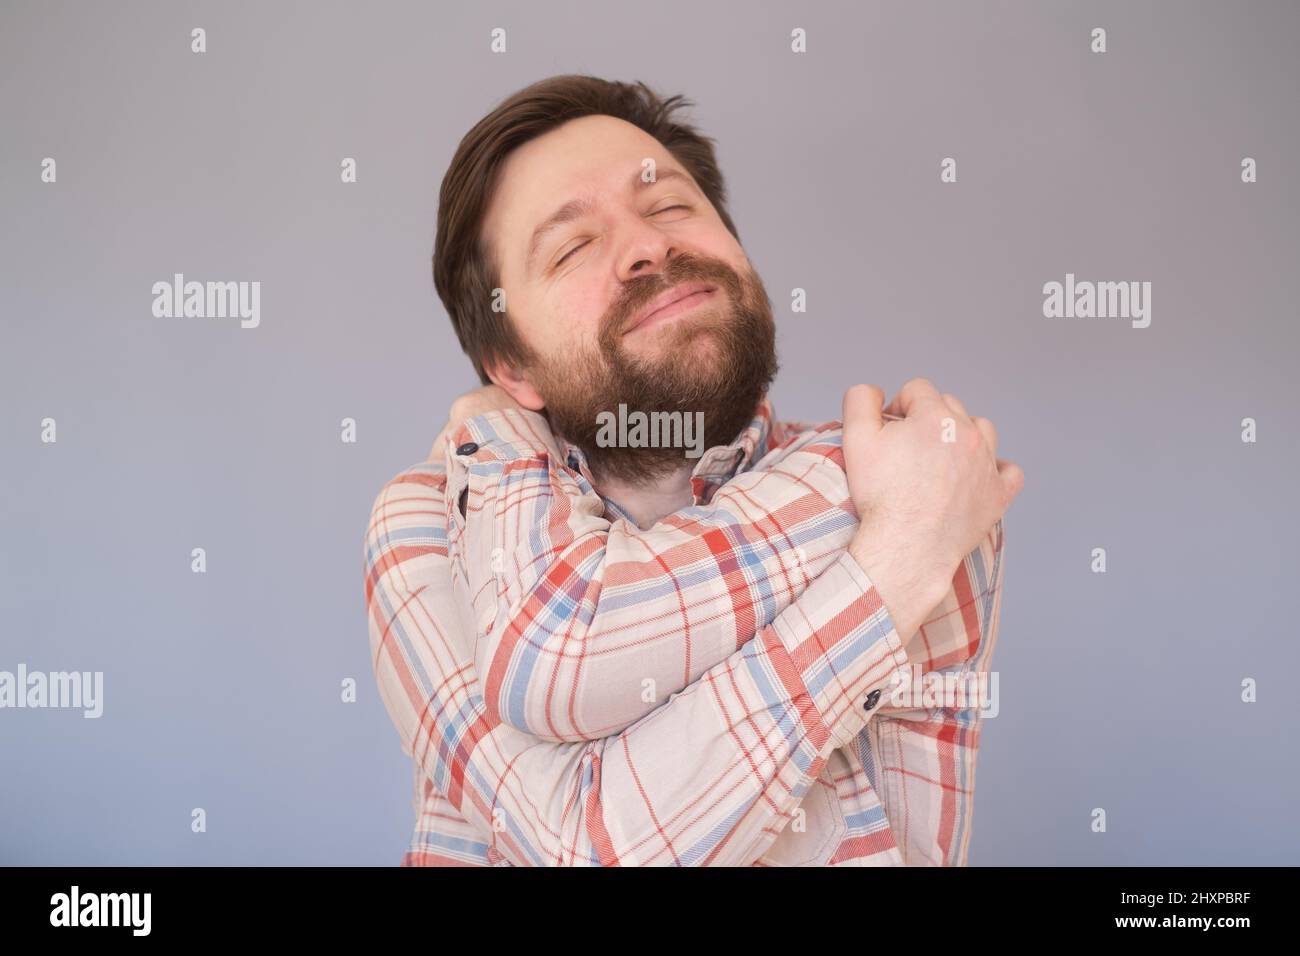 Homme caucasien avec la barbe s'embrassant heureux et positif, souriant confiant. Banque D'Images